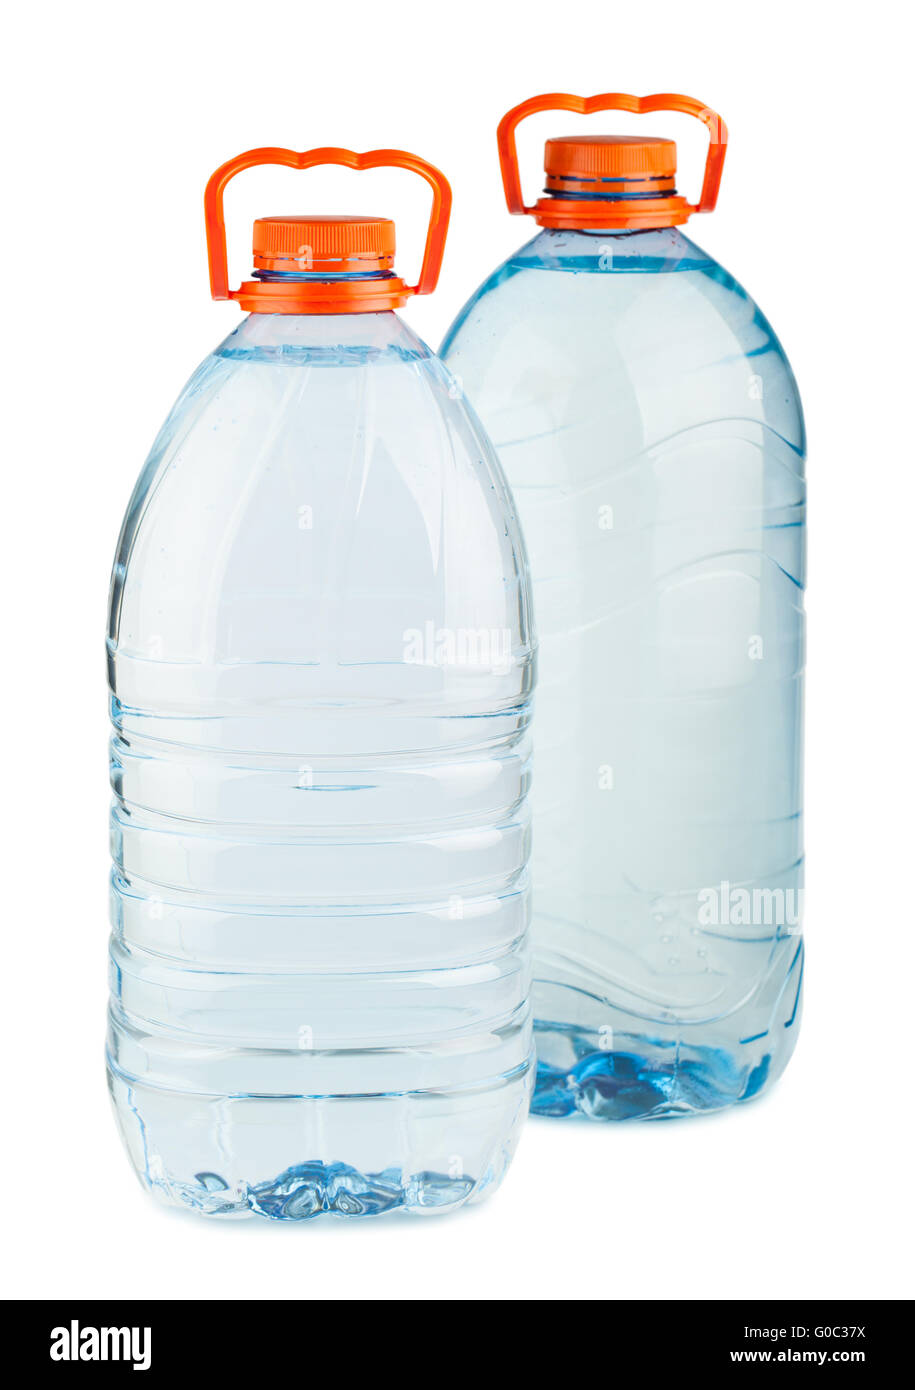 Deux grandes bouteilles d'eau en plastique avec bouchons orange Banque D'Images